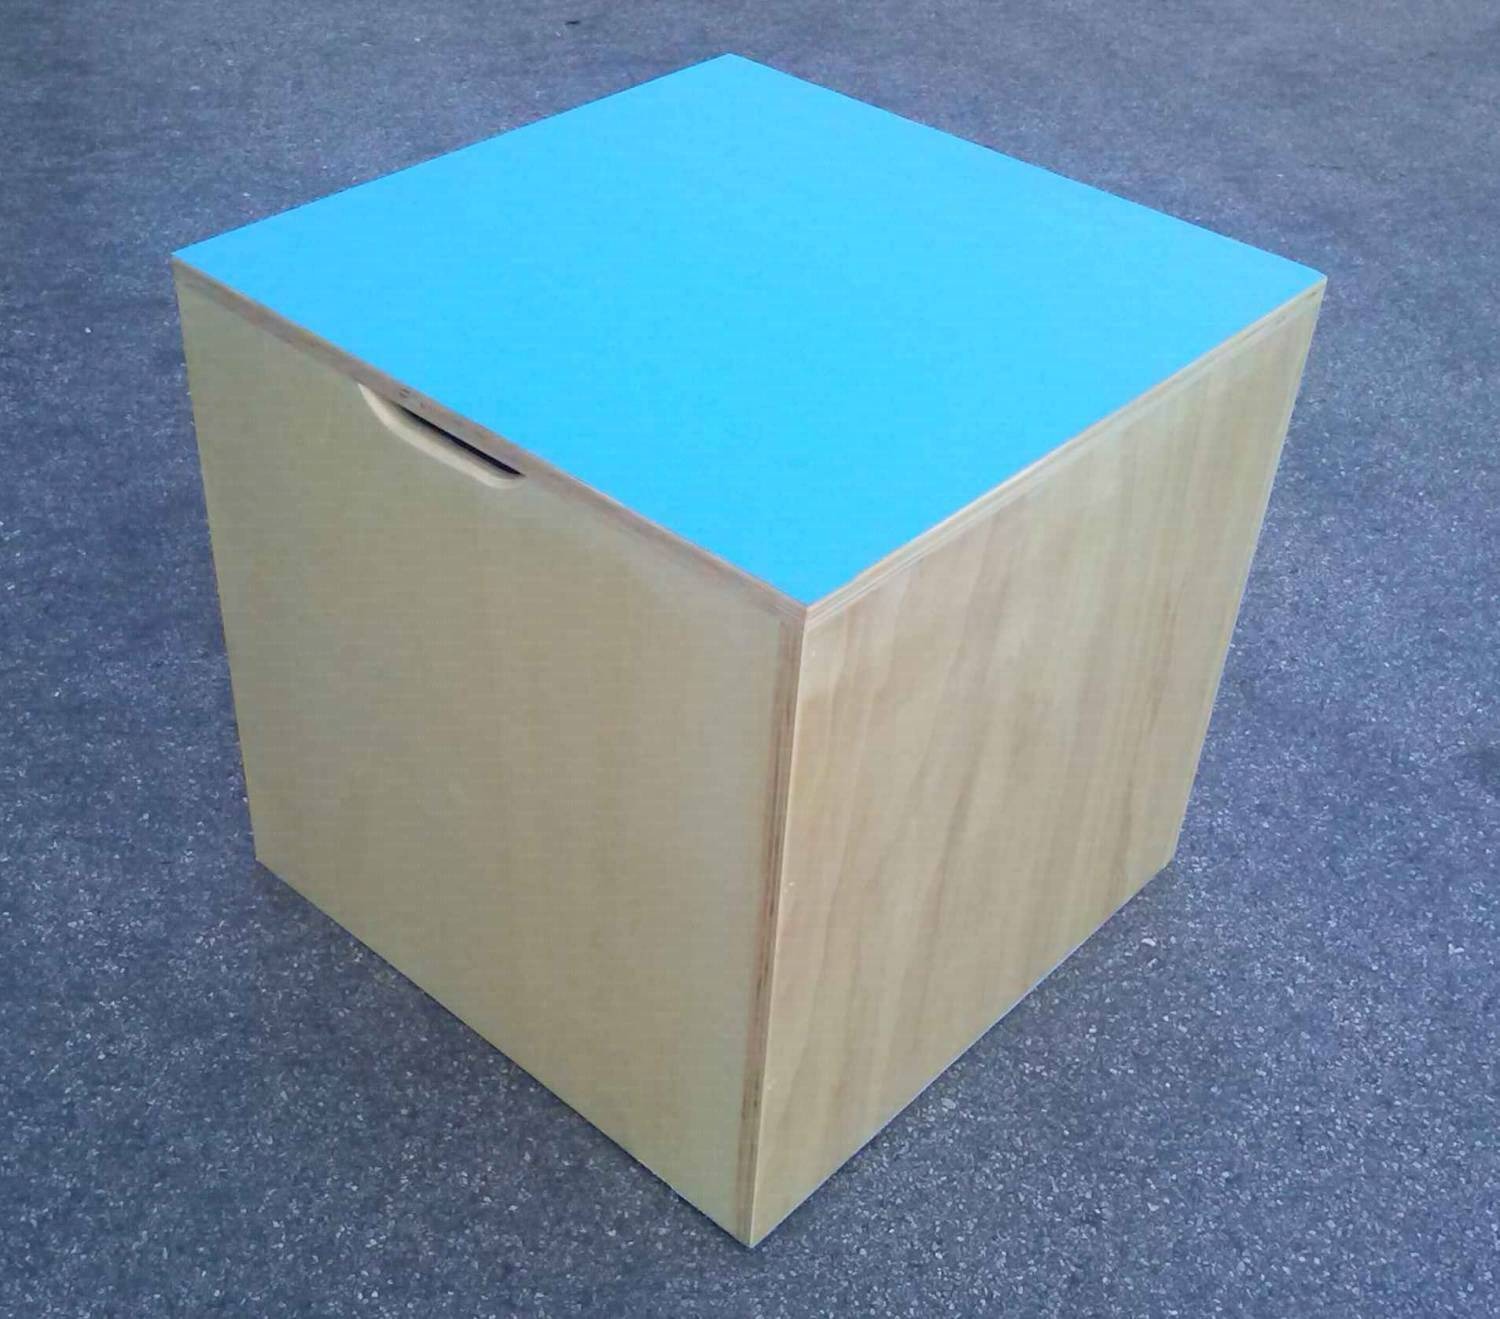 Cubo propriocettivo misura 70x70x70 cm., in legno con fondo e piano superiore dotato di antiscivolo, con impugnature per il trasporto.